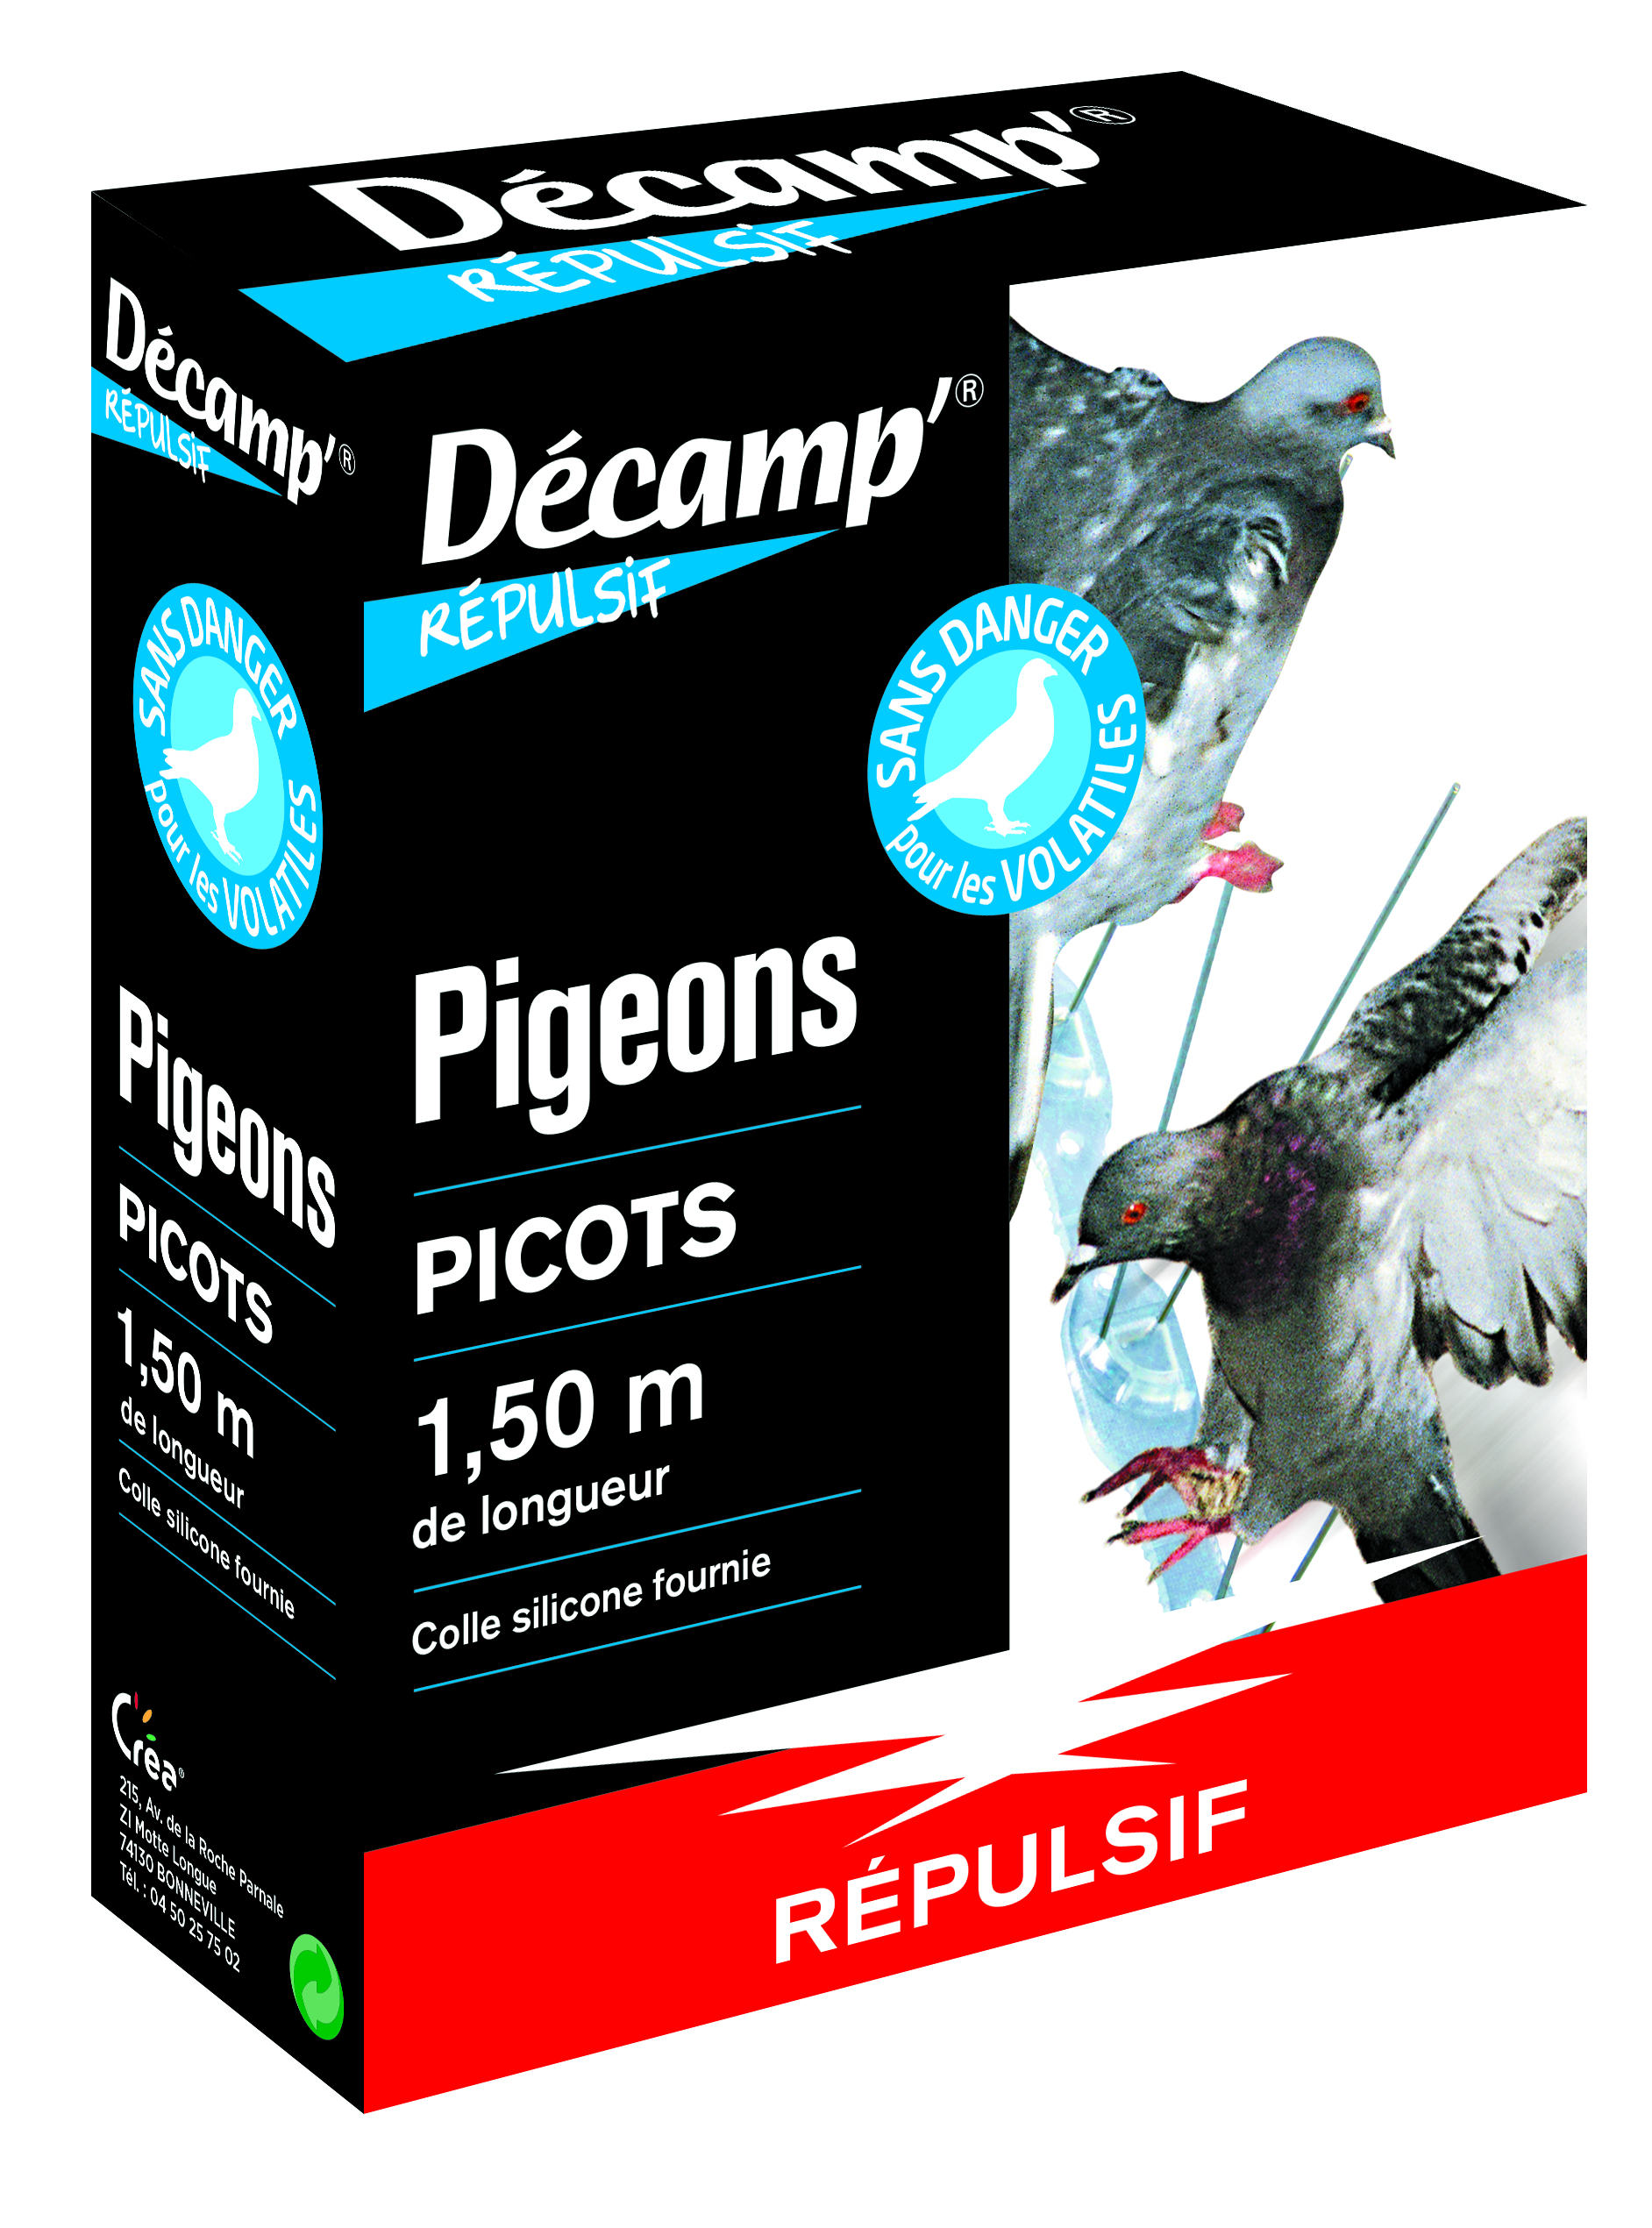 Répulsif mécanique pigeon Retro, Picots de protection - Distriver 52